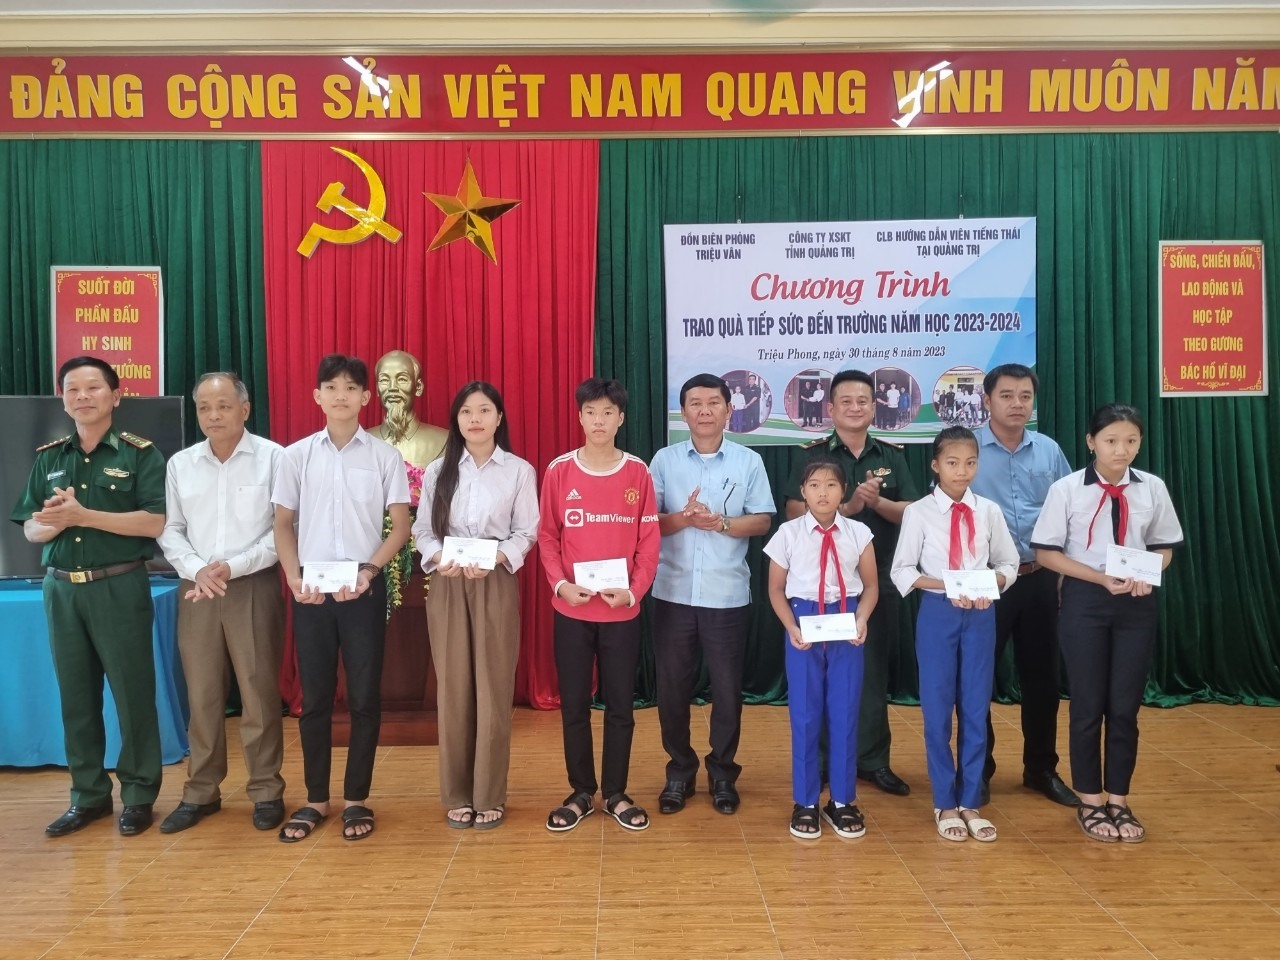 Đại tá Ngô Xuân Thường - Phó Chính ủy BĐBP tỉnh, cùng Lãnh đạo địa phương 03 xã trao học bổng cho các cháu.